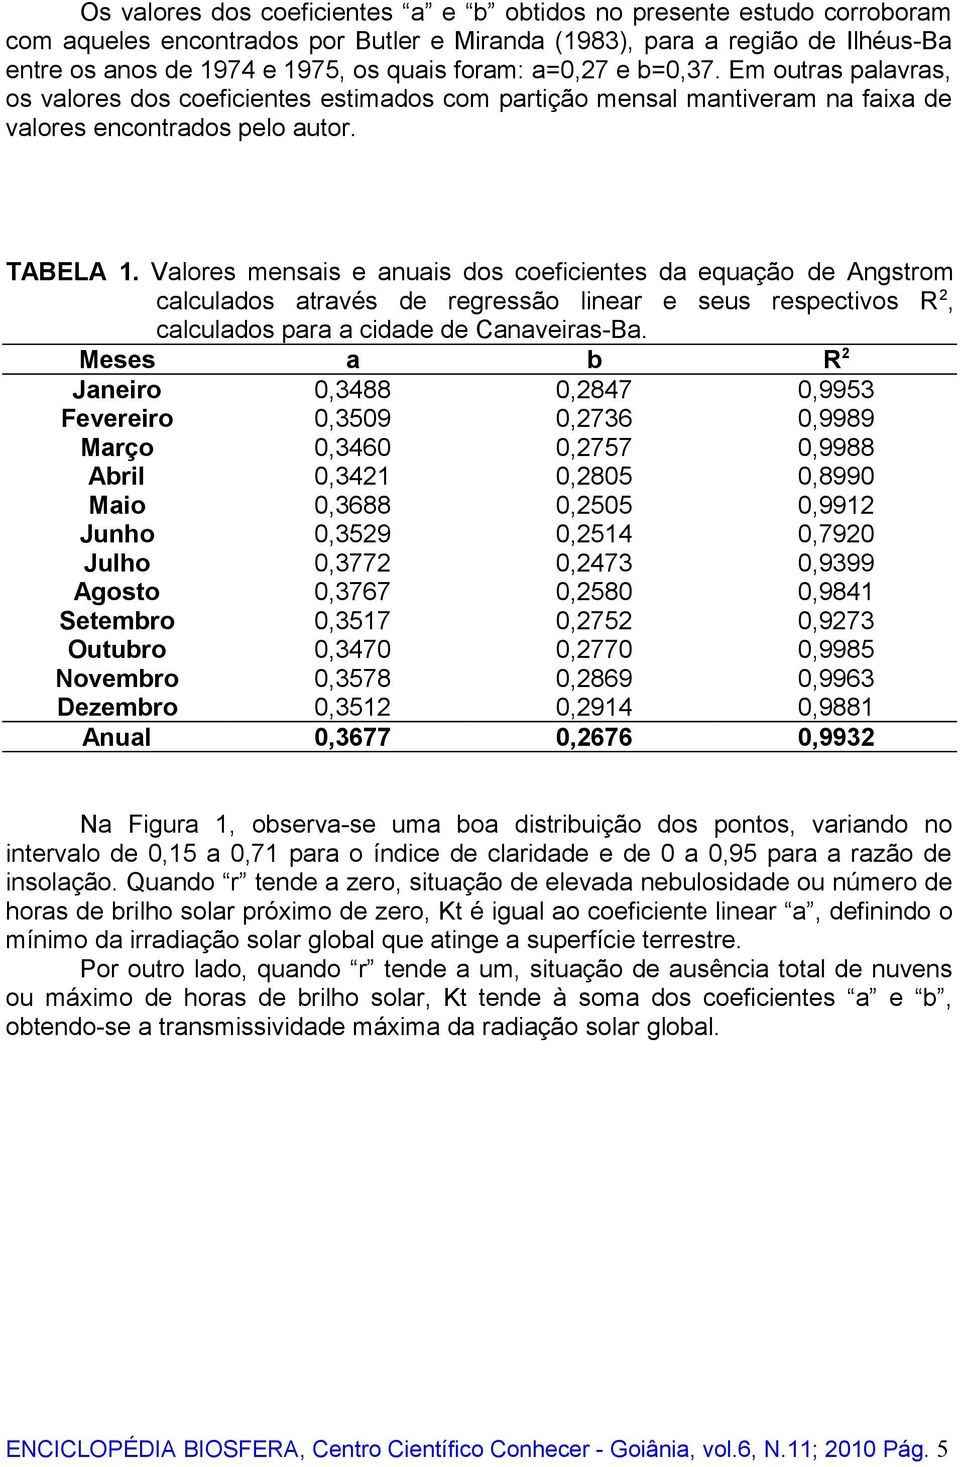 Valores mensais e anuais dos coeficientes da equação de Angstrom calculados através de regressão linear e seus respectivos R 2, calculados para a cidade de Canaveiras-Ba.